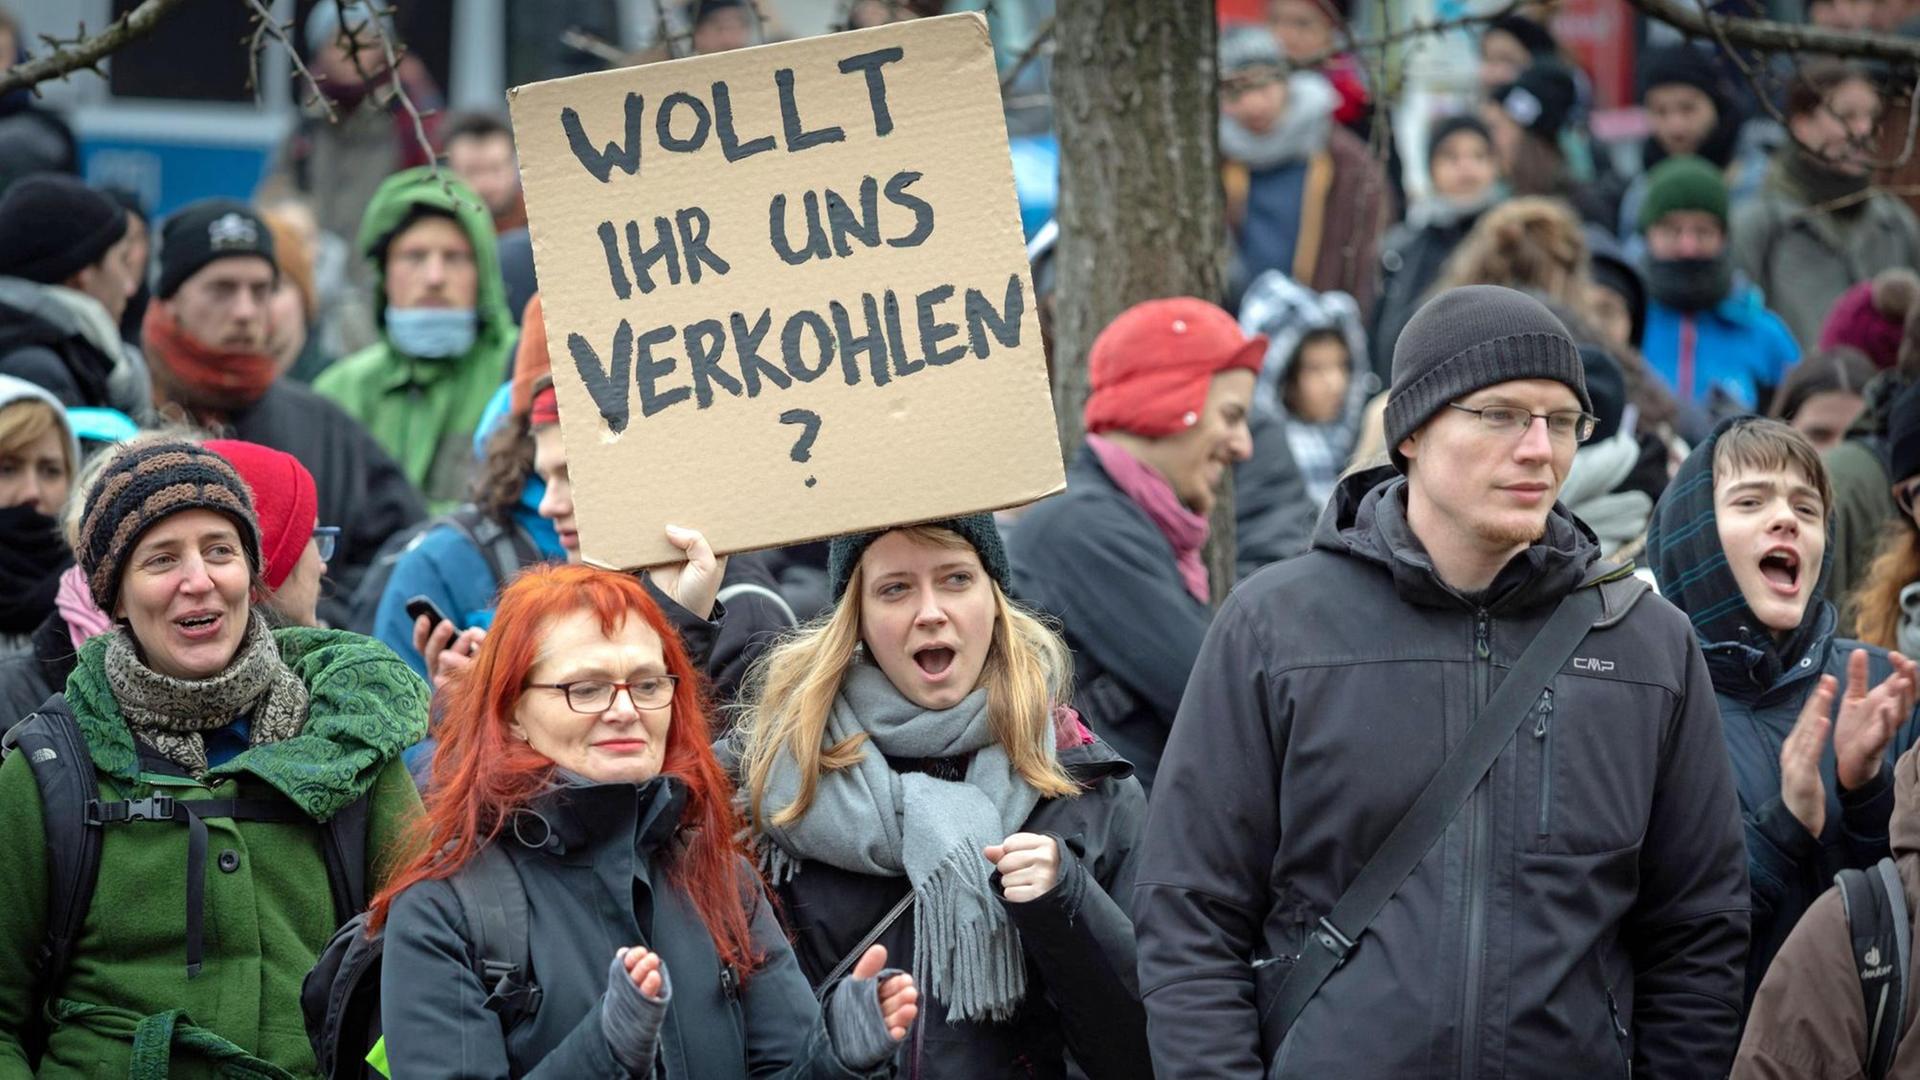 Proteste für Klimaschutz in Berlin: Aktivisten von "EndeGelände" halten ein Schild mit dem Satz "Wollt ihr uns verkohlen?" hoch.